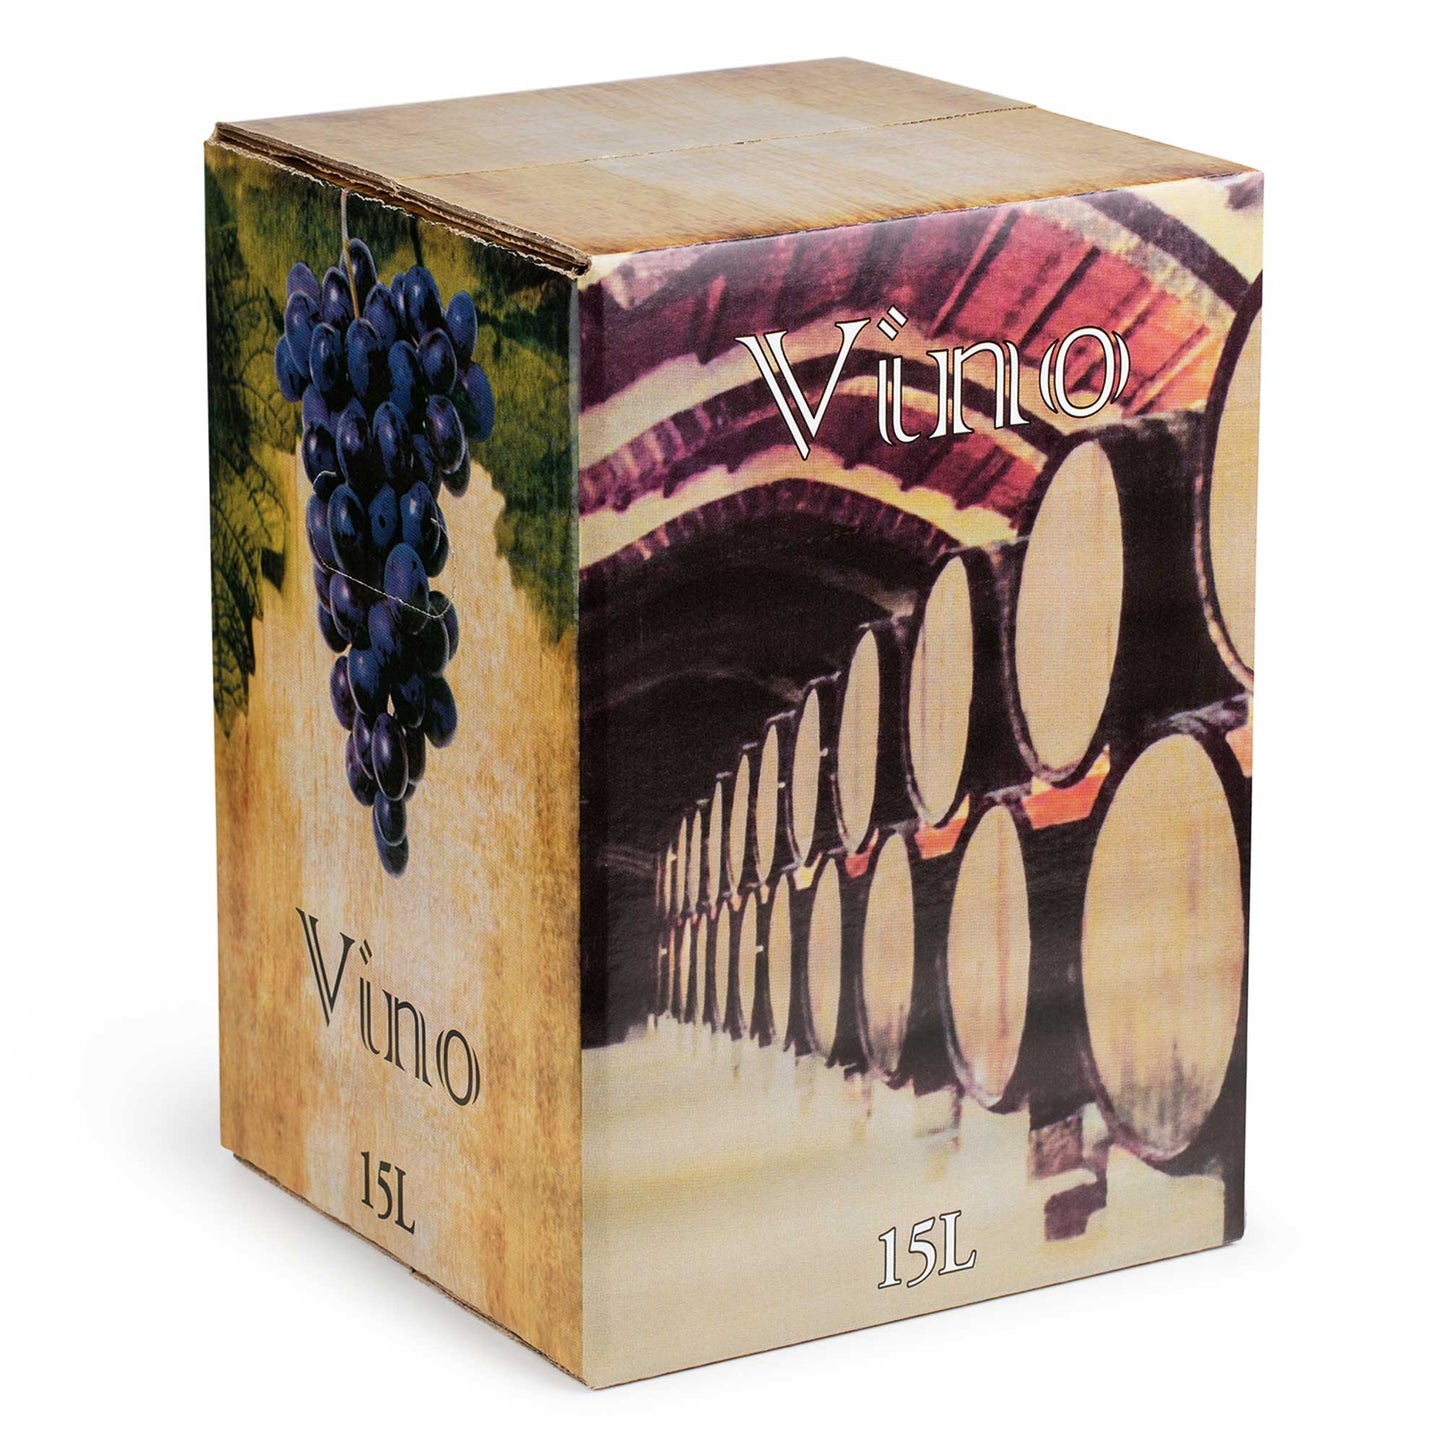 – grifo | in 15 Calvo tinto con La Bodegas vino Bag Box Sanz Eralta de Litros vino tinto Caja Bodegas